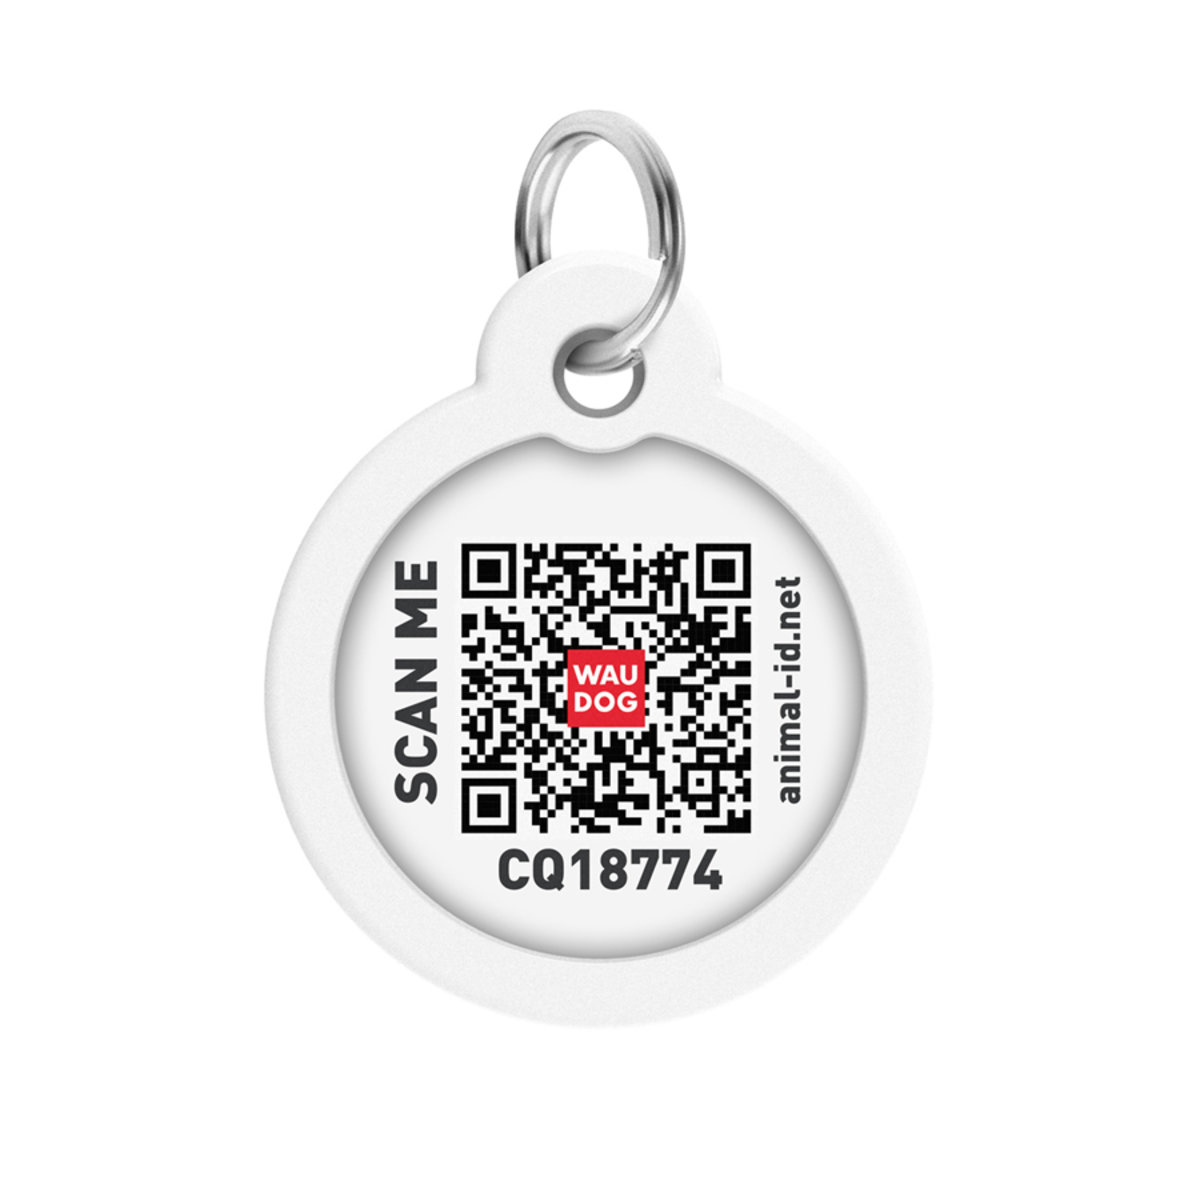 Адресник для собак и кошек Waudog Smart ID с QR паспортом, Корги, M, диаметр 30 мм - фото 3